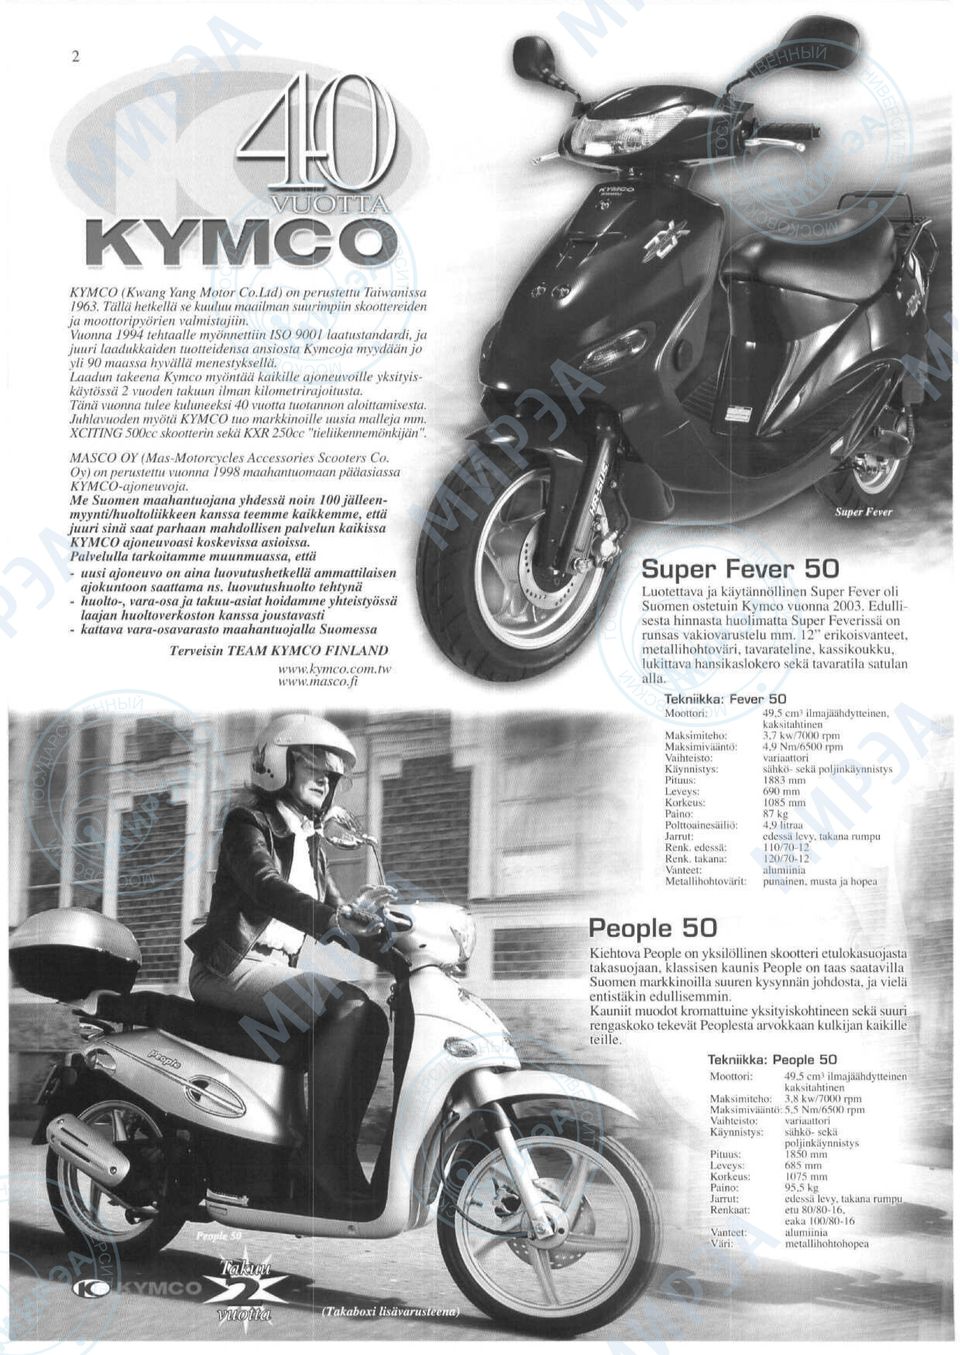 Laadun takeena Kymco myimtcia kaikille ajoneuvoille yksityiskaytossa 2 vuoden takuun ilman kilometrirajoitusta. Tana vuonna tulee kuluneeksi 40 vuotta tuotannon aloittamisexta.